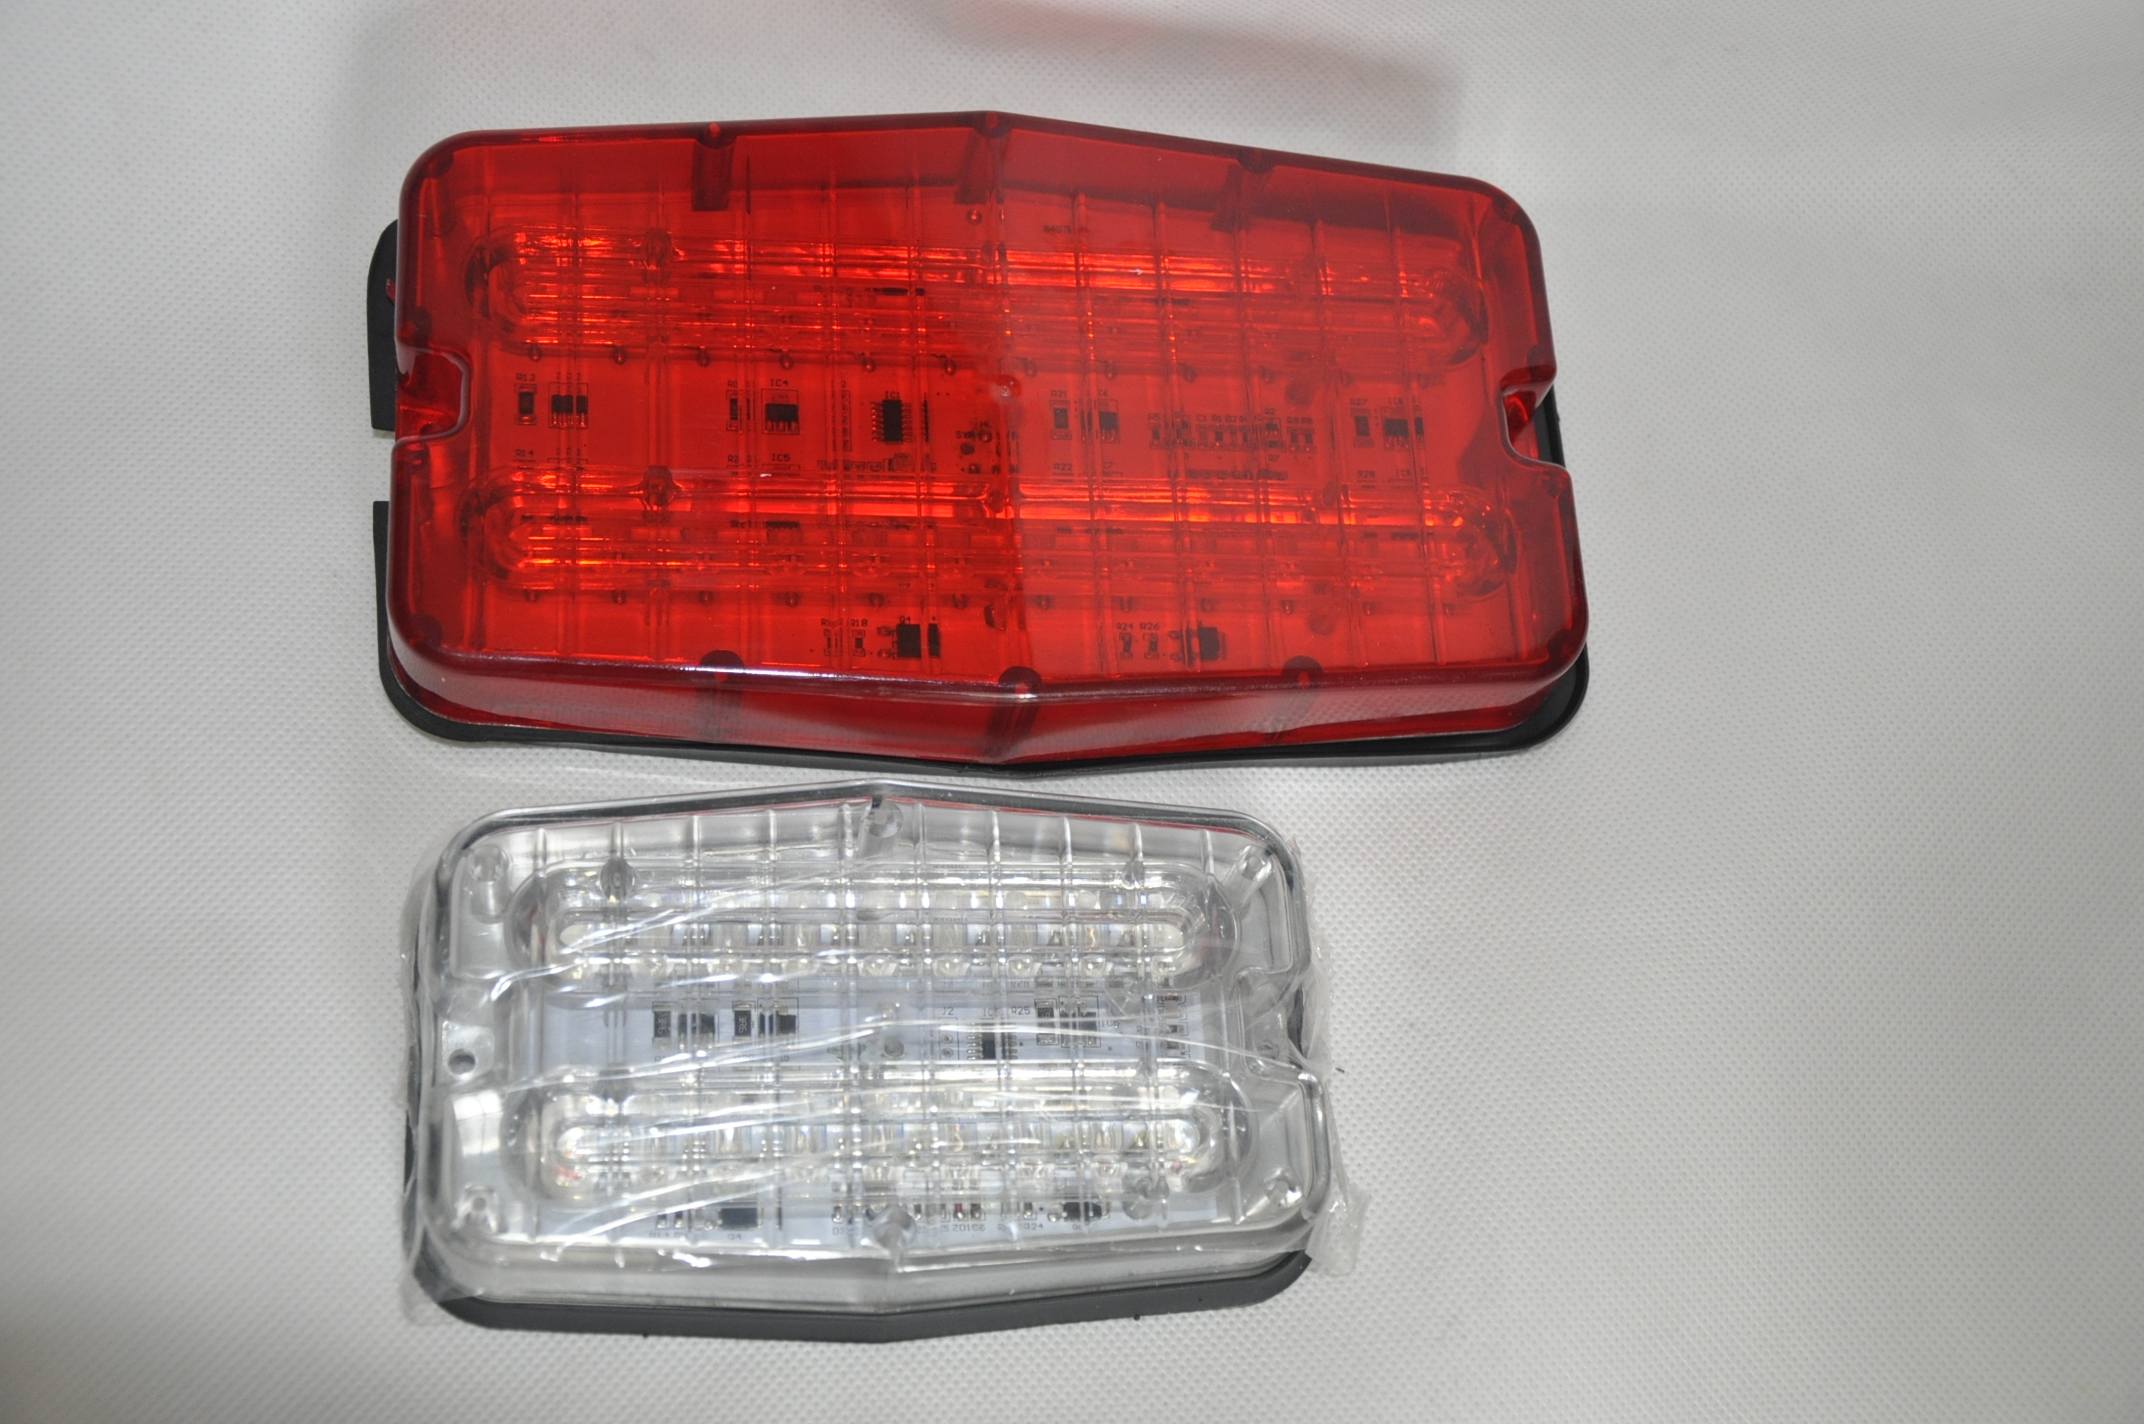 LTD-3180 LED car strobe light